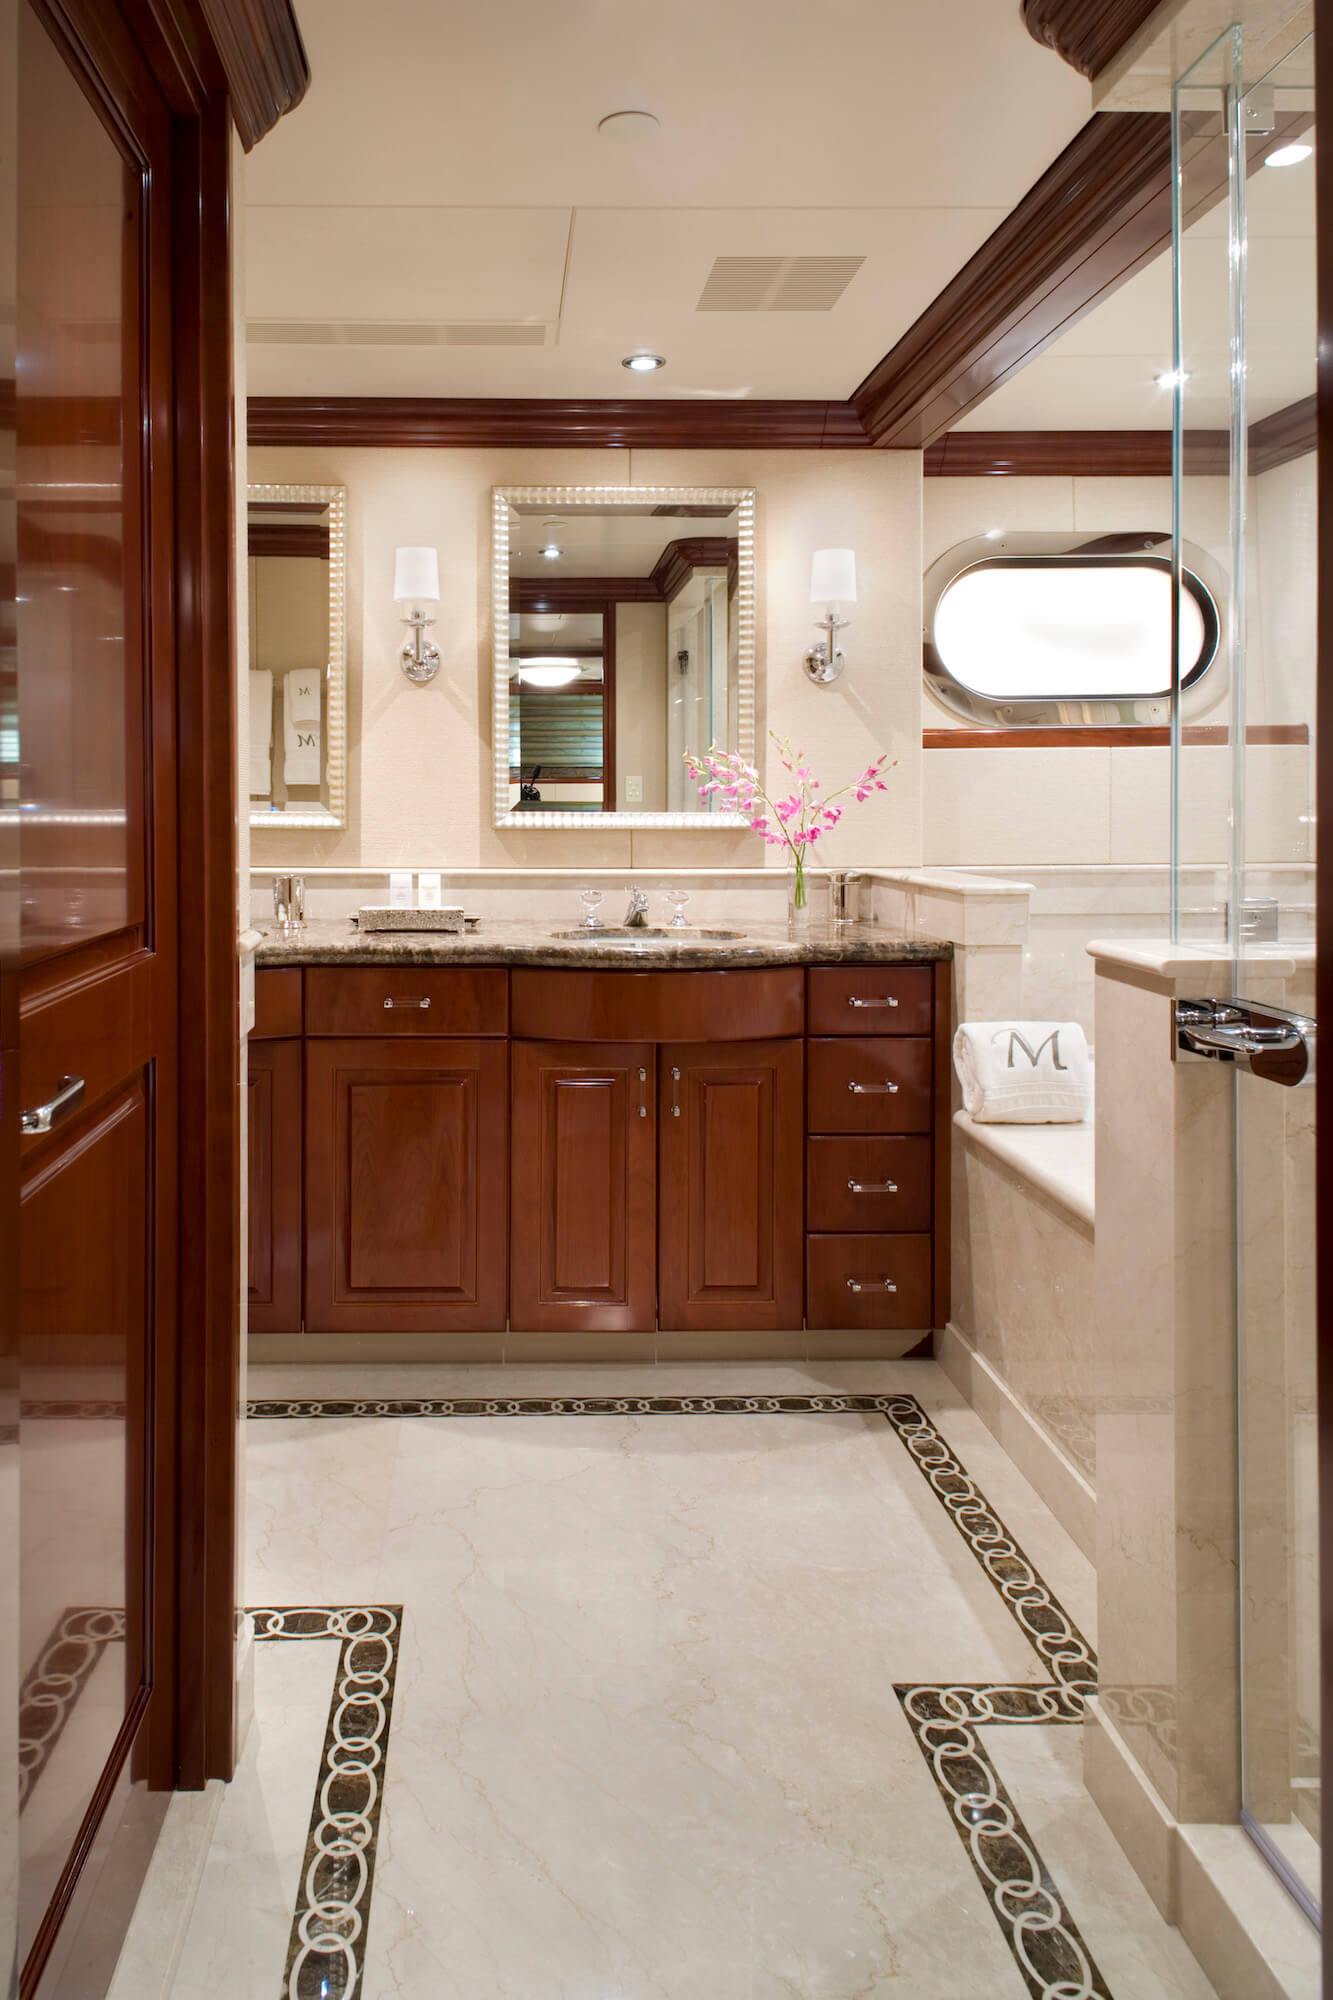 Marathon luxury yacht master bath sink and tub